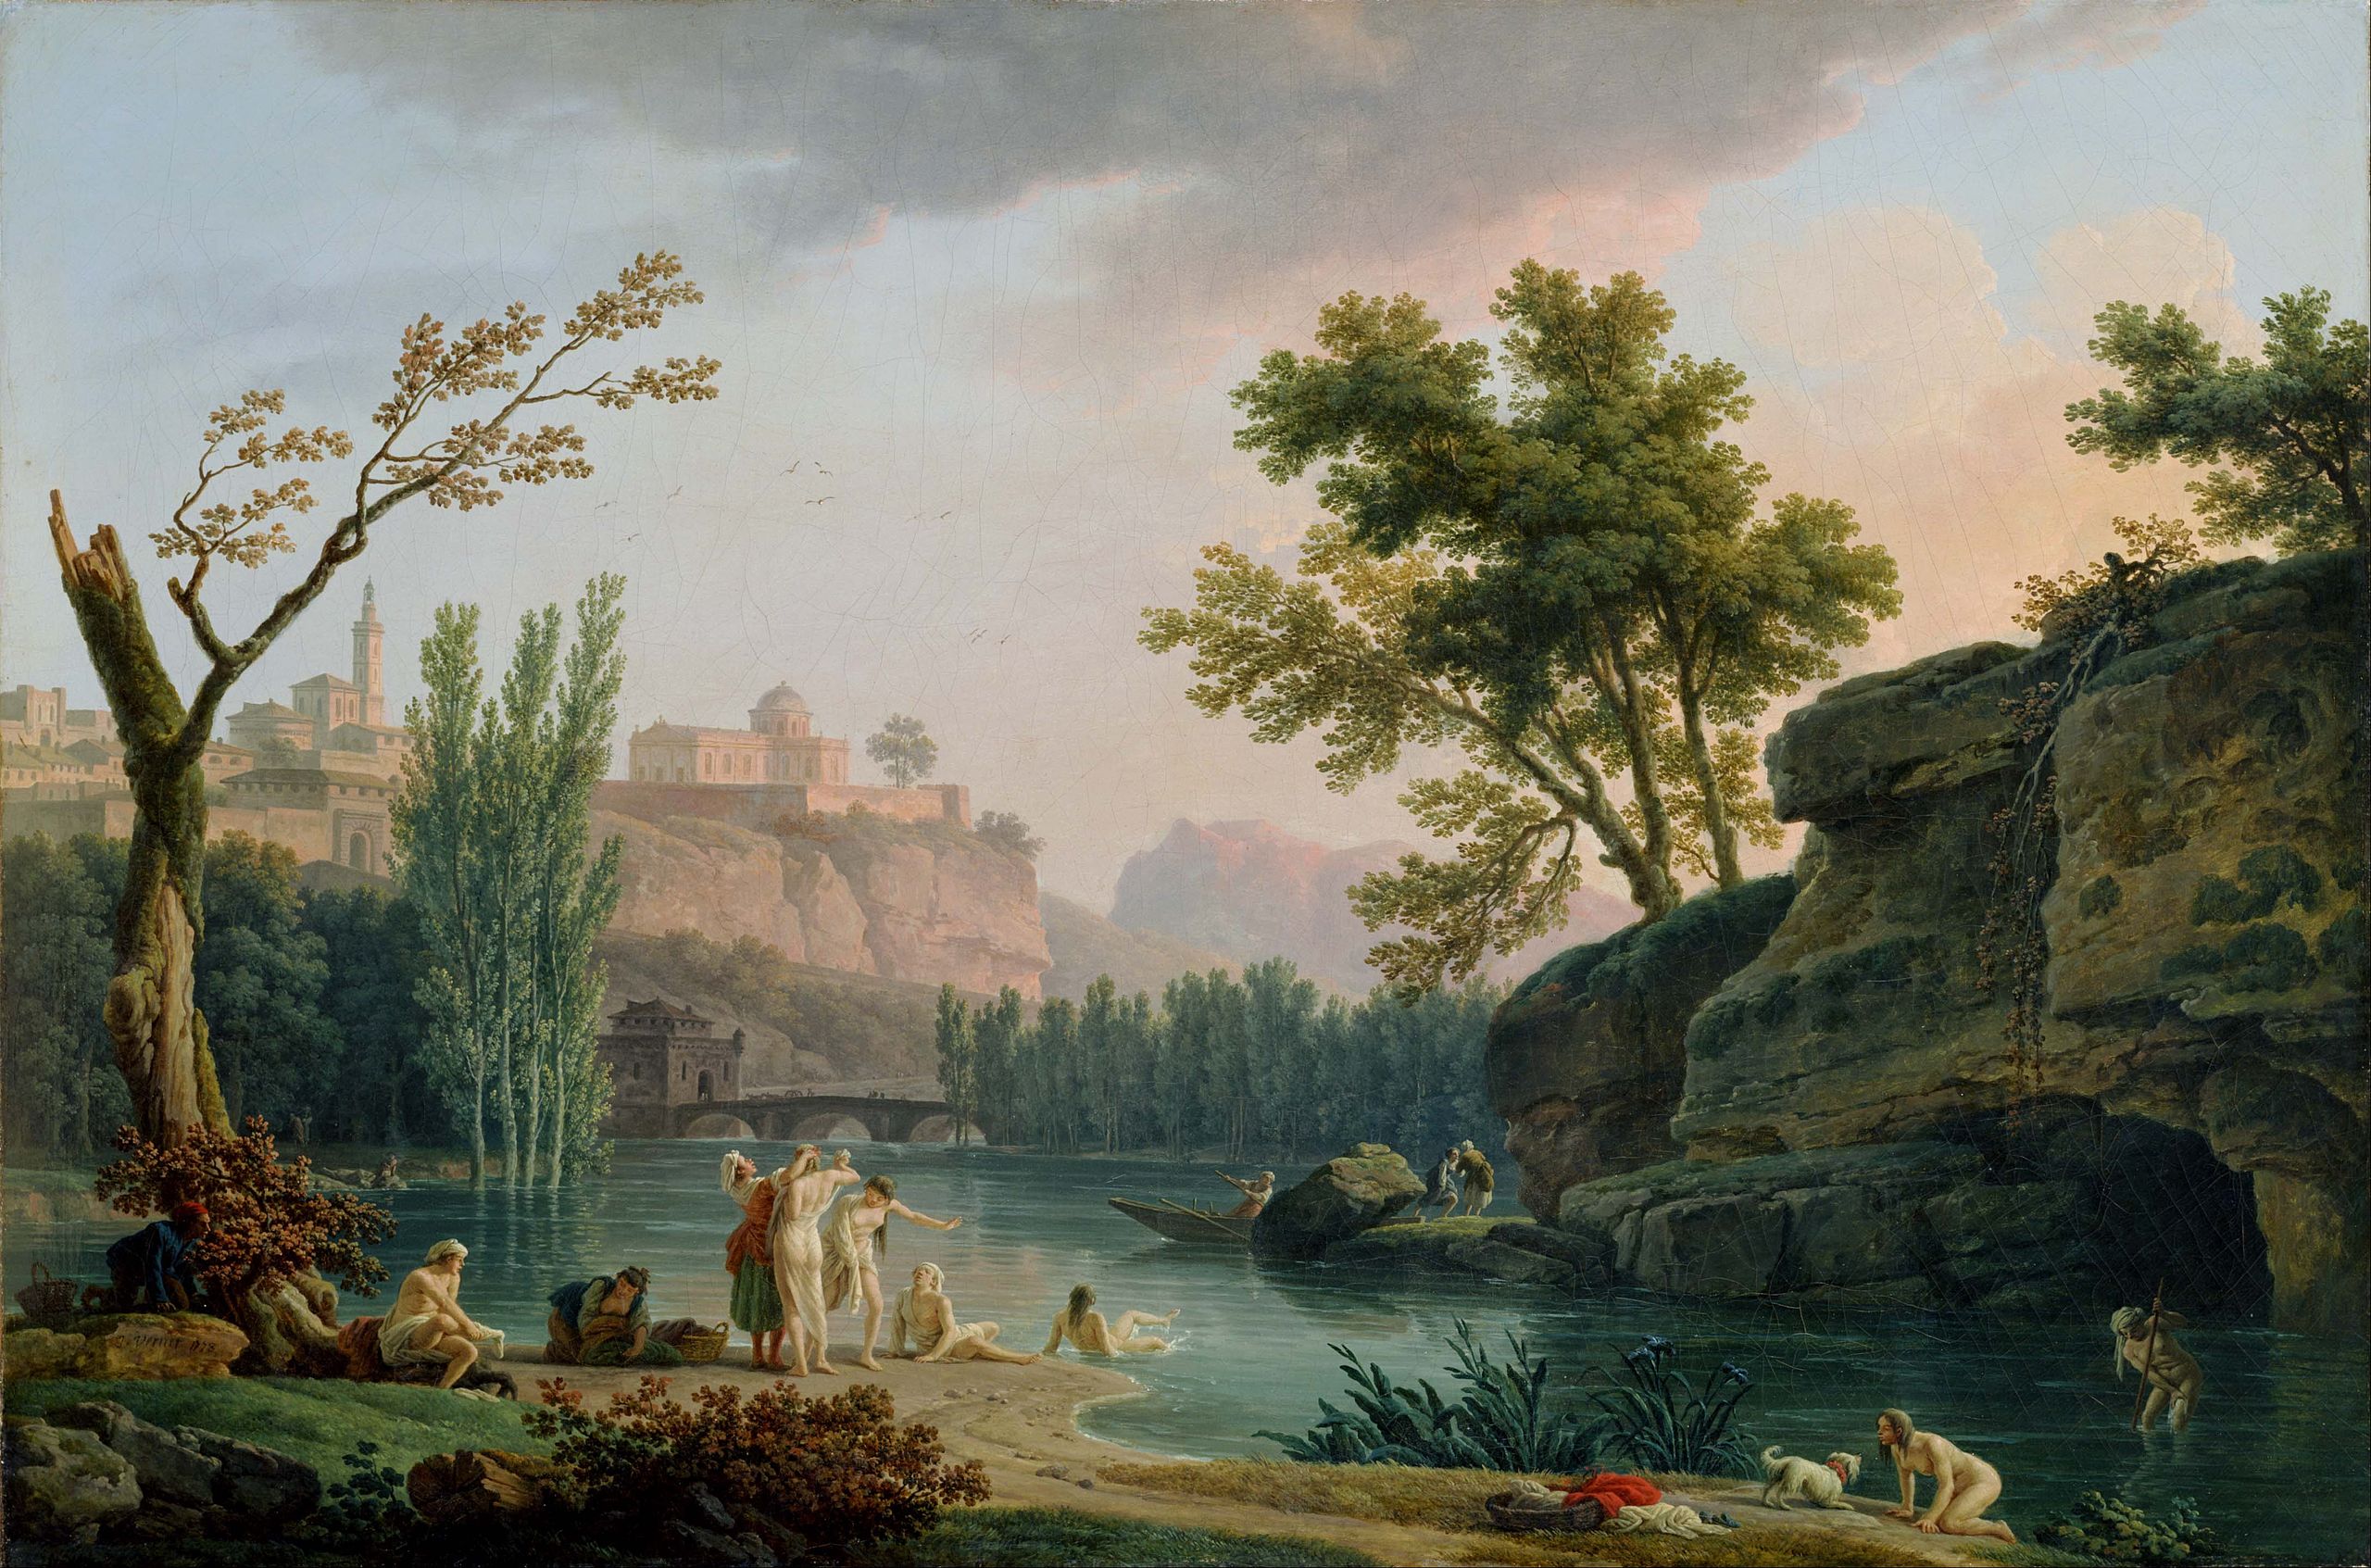 Letní večer, krajina v Itálii by Claude-Joseph Vernet - 1773 - 133 x 89 cm 